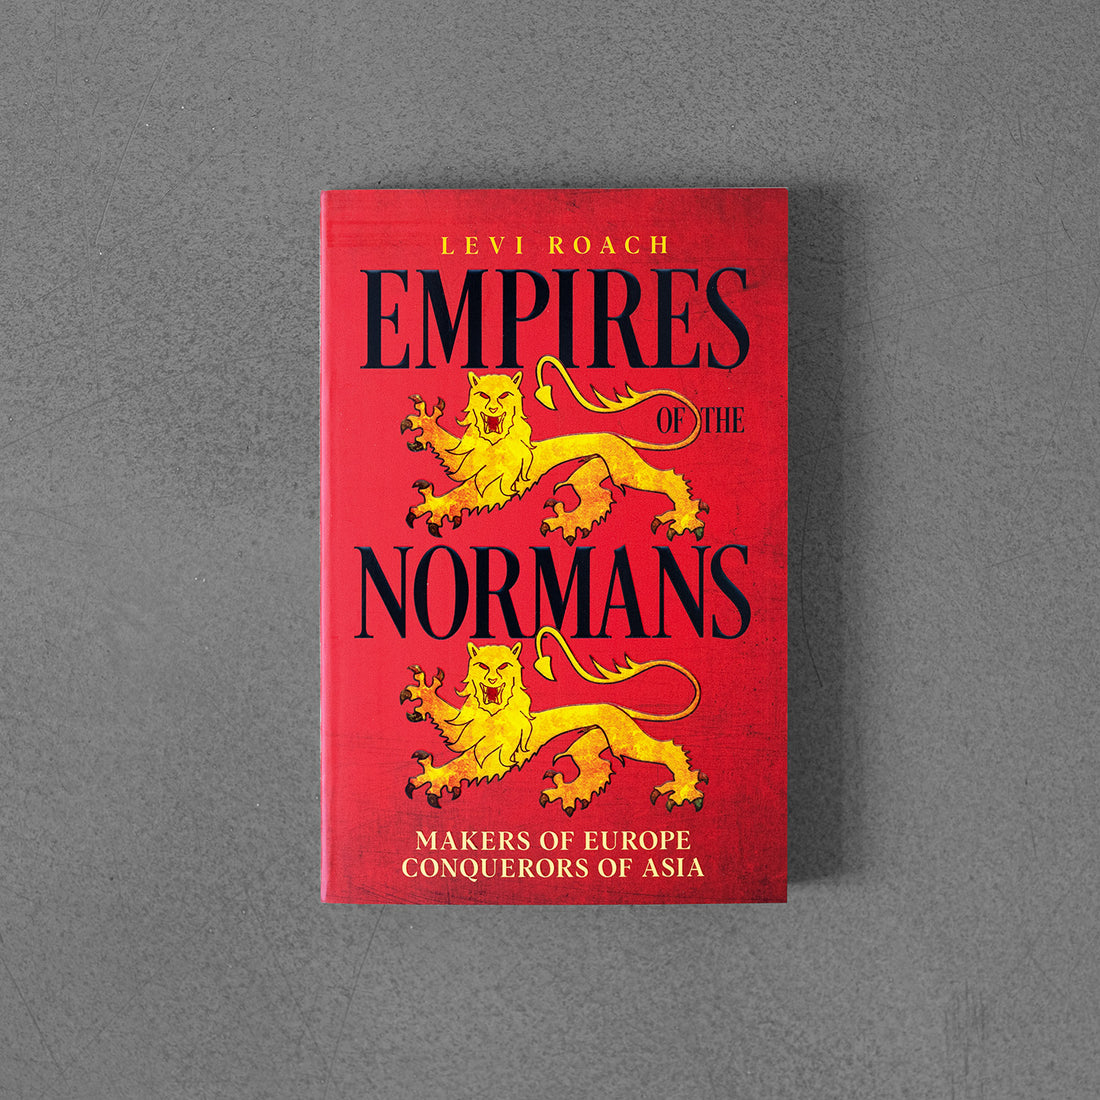 Imperia Normanów: Twórcy Europy, zdobywcy Azji – Levi Roach